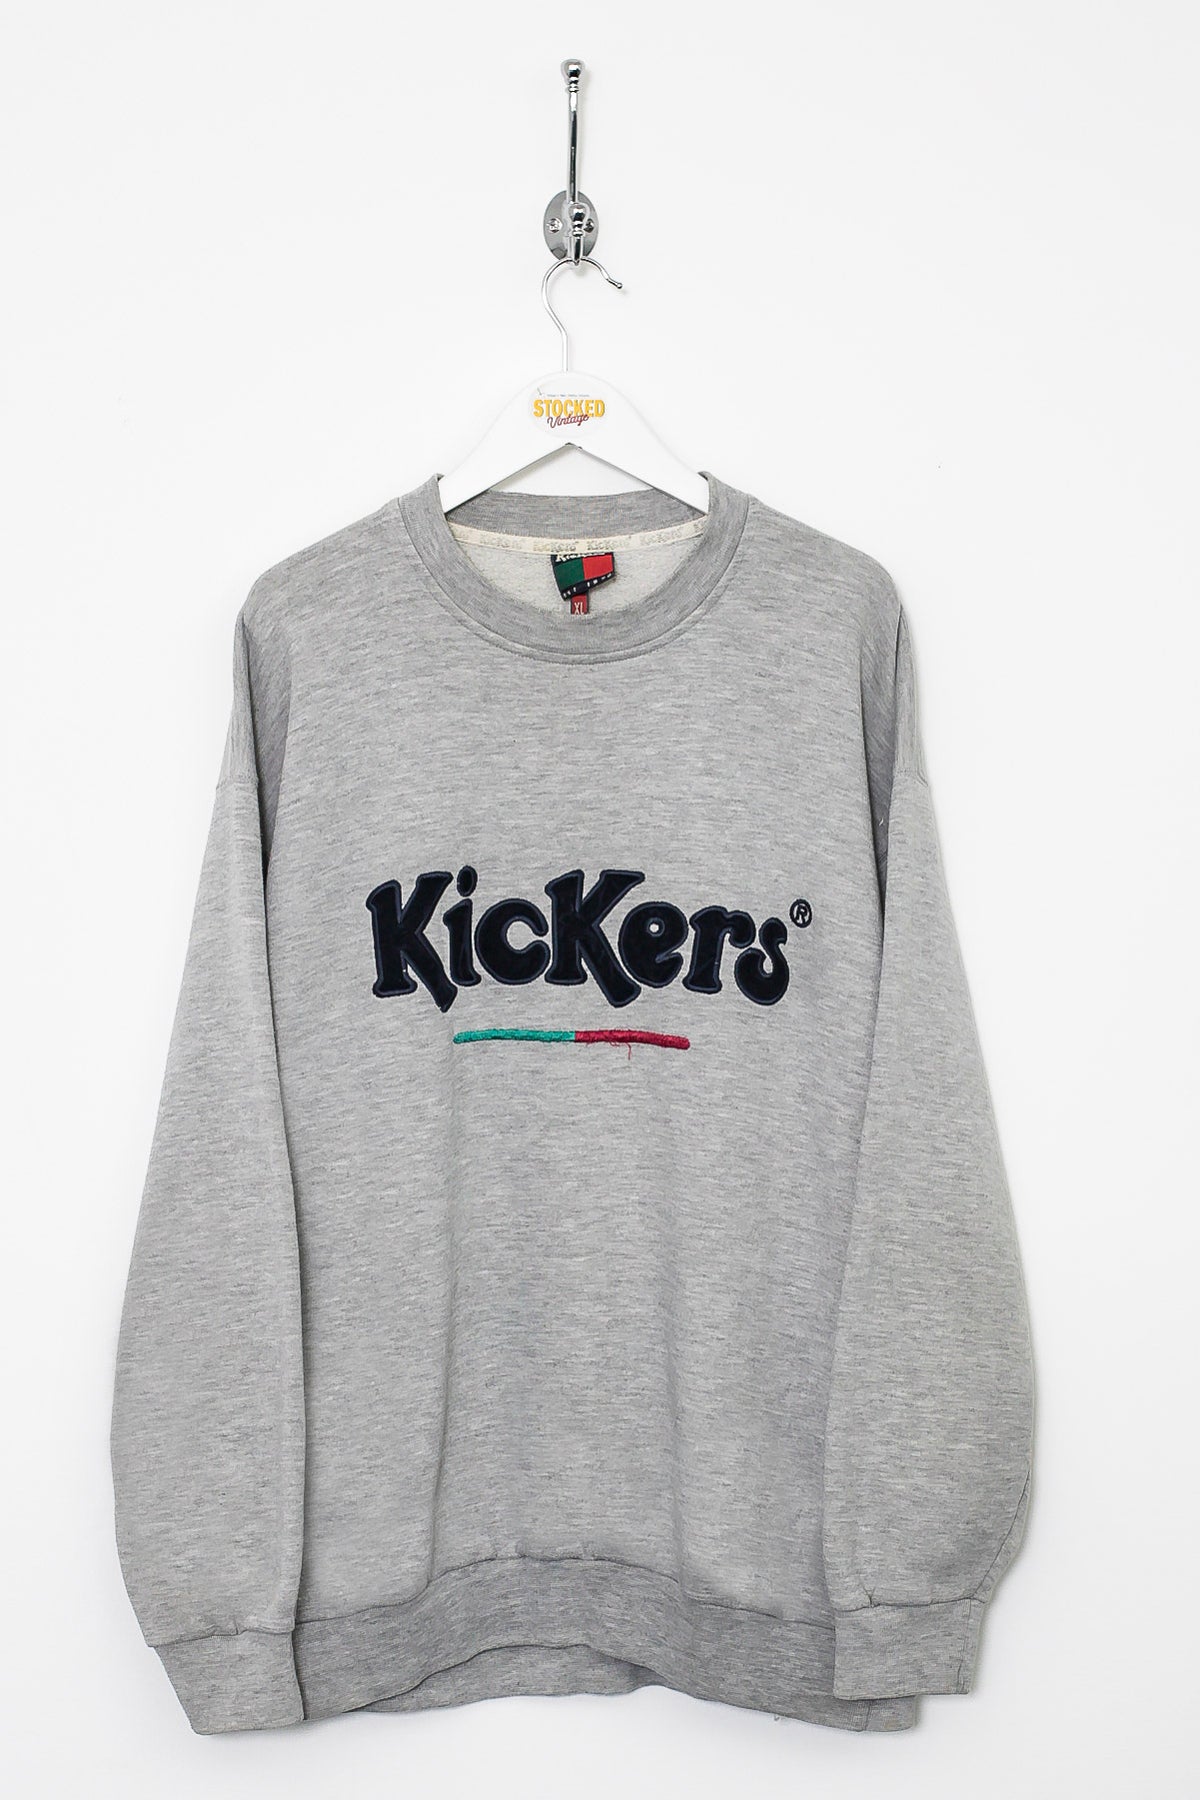 00s Kickers Sweatshirt (L)